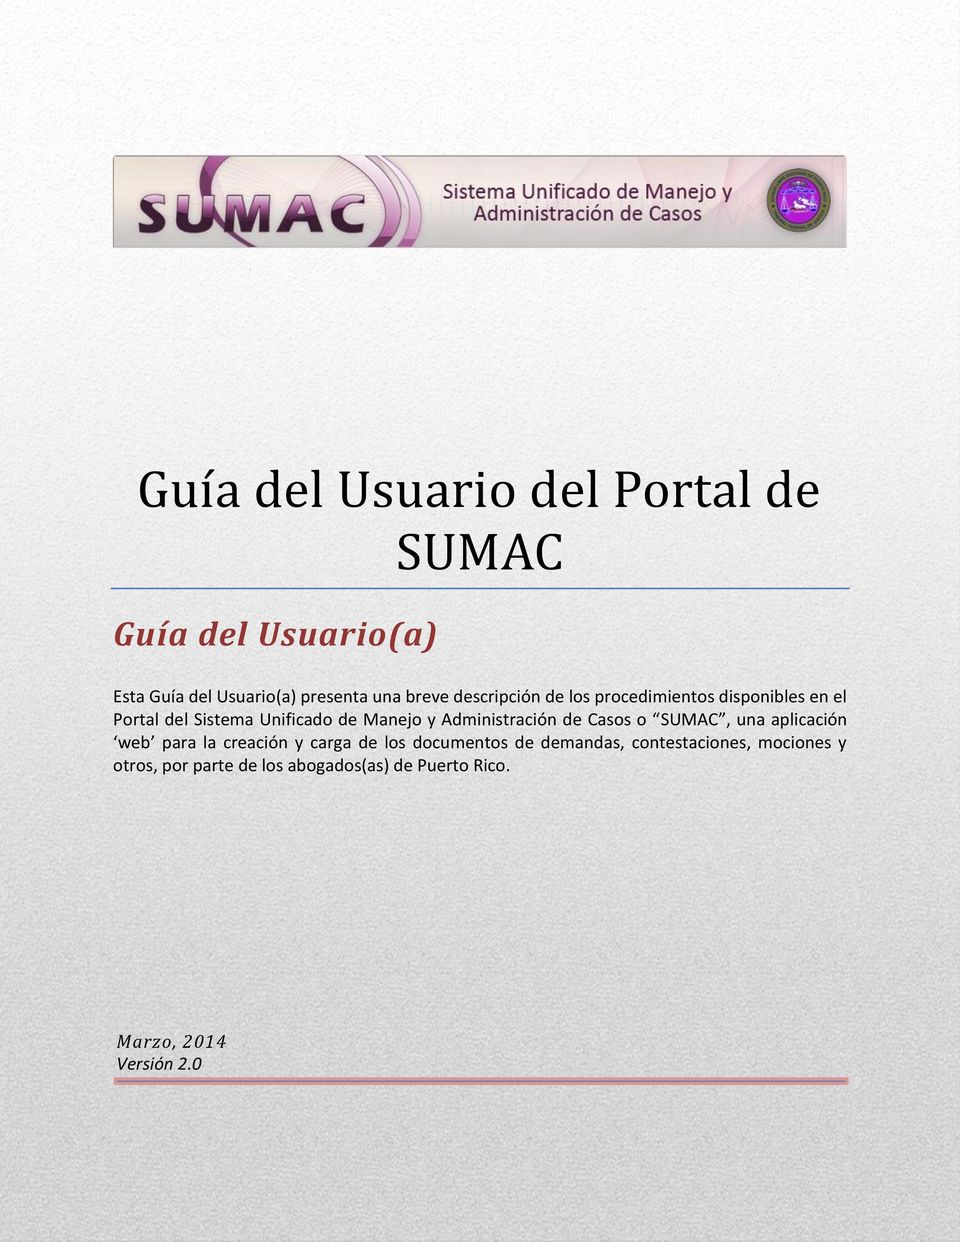 Casos o SUMAC, una aplicación web para la creación y carga de los documentos de demandas,